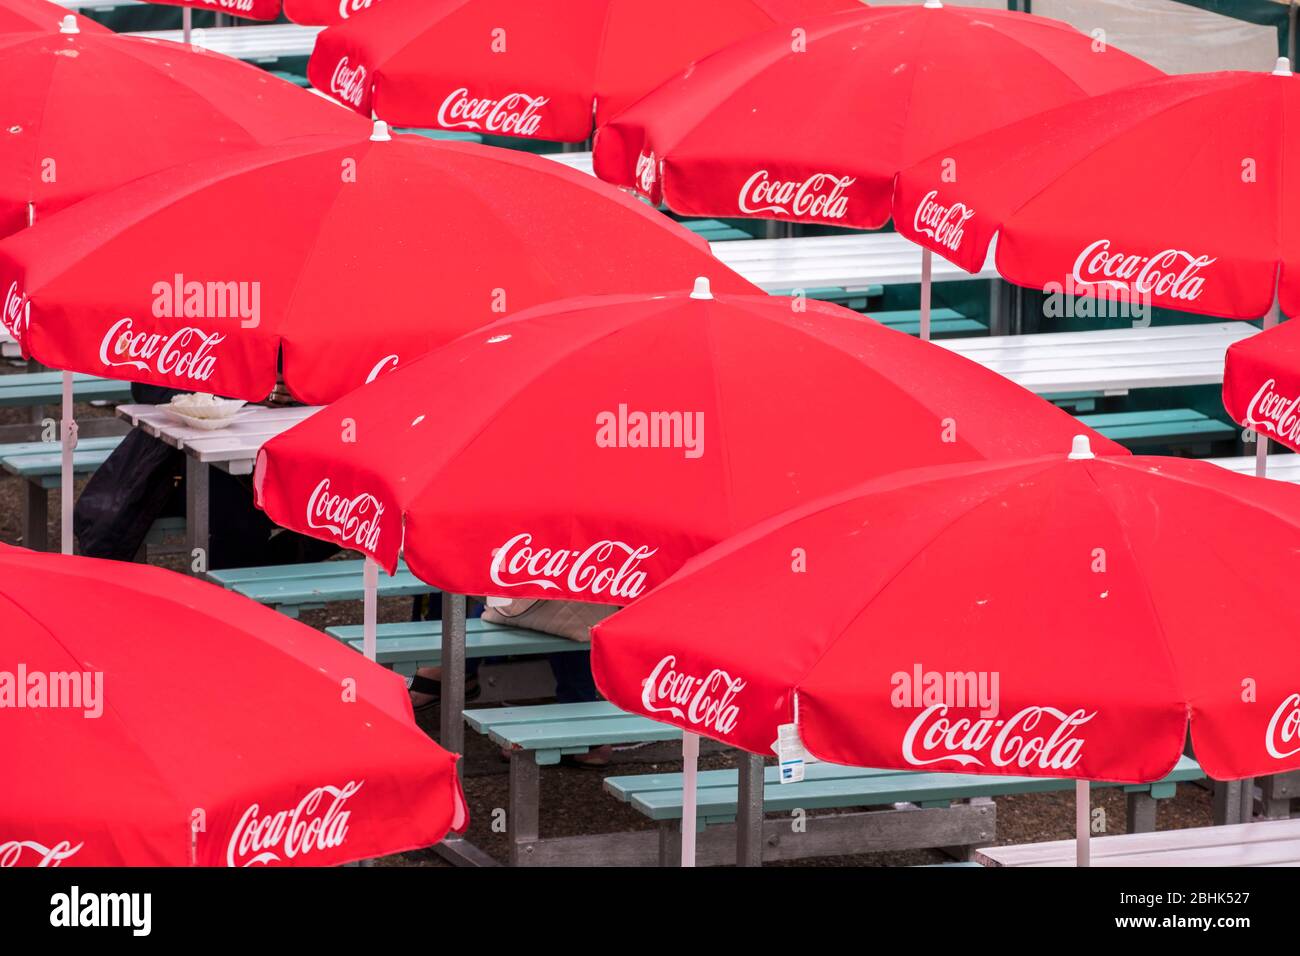 Coca cola fotografías e imágenes de alta resolución - Página 2 - Alamy